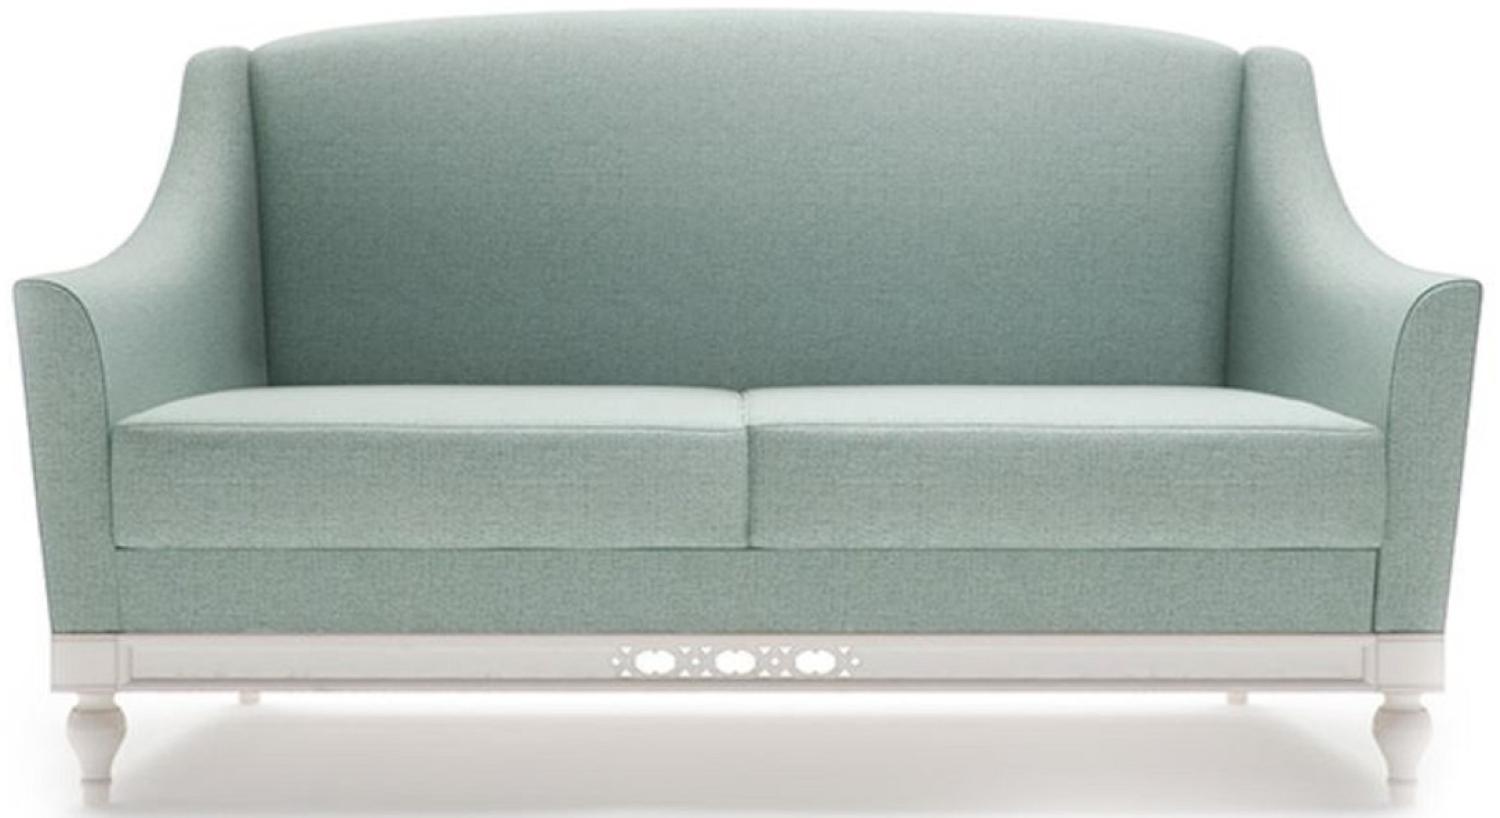 Casa Padrino Luxus Jugendstil 2er Sofa Mintgrün / Weiß 152 x 90 x H. 96 cm - Luxus Qualität Bild 1